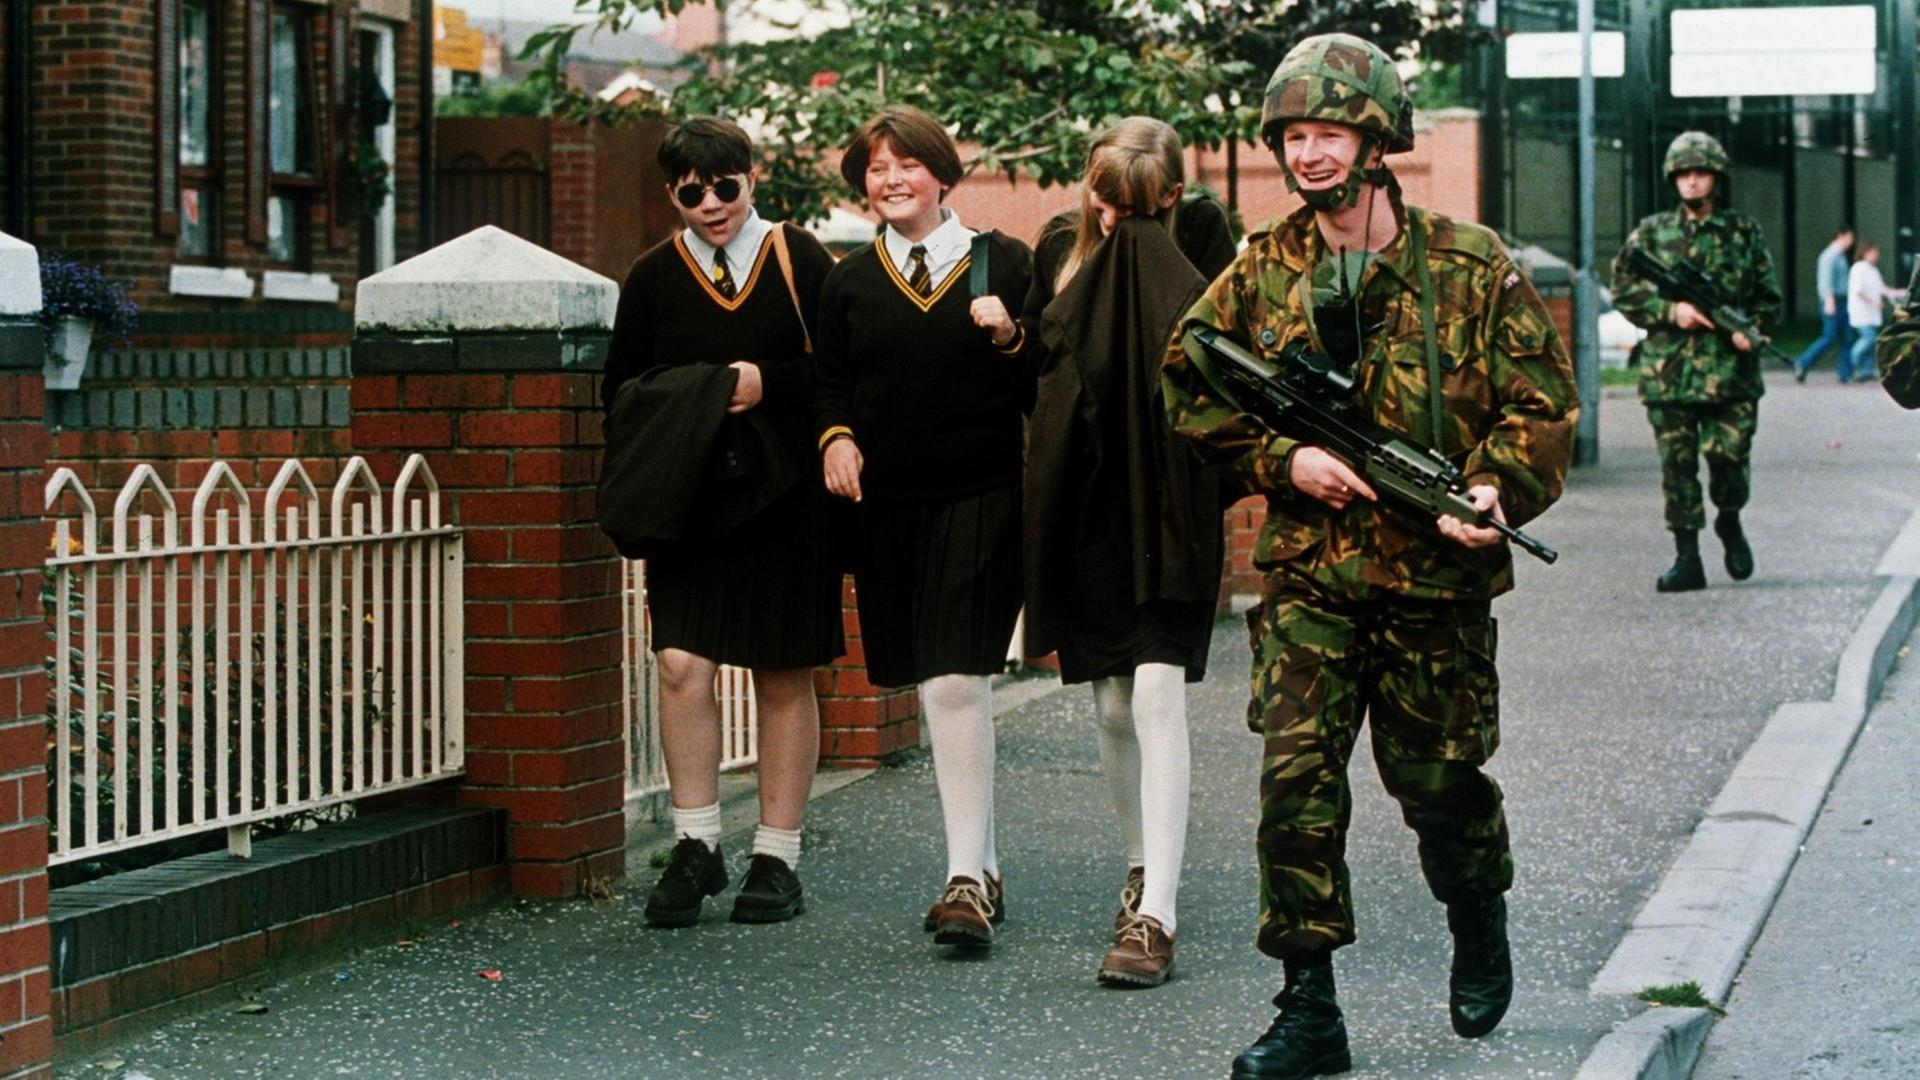 Katholische Schulmädchen lachen mit einem britischen Soldaten, der im Gebiet der Falls Road patroulliert. Nach 25 Jahren blutigem Terror hat die irische Untergundorganisation IRA am 31.08.1994 einen uneingeschränkten Gewaltverzicht erklärt und damit einen Schritt zur Beendigung des Nordirland-Konflikts getan |